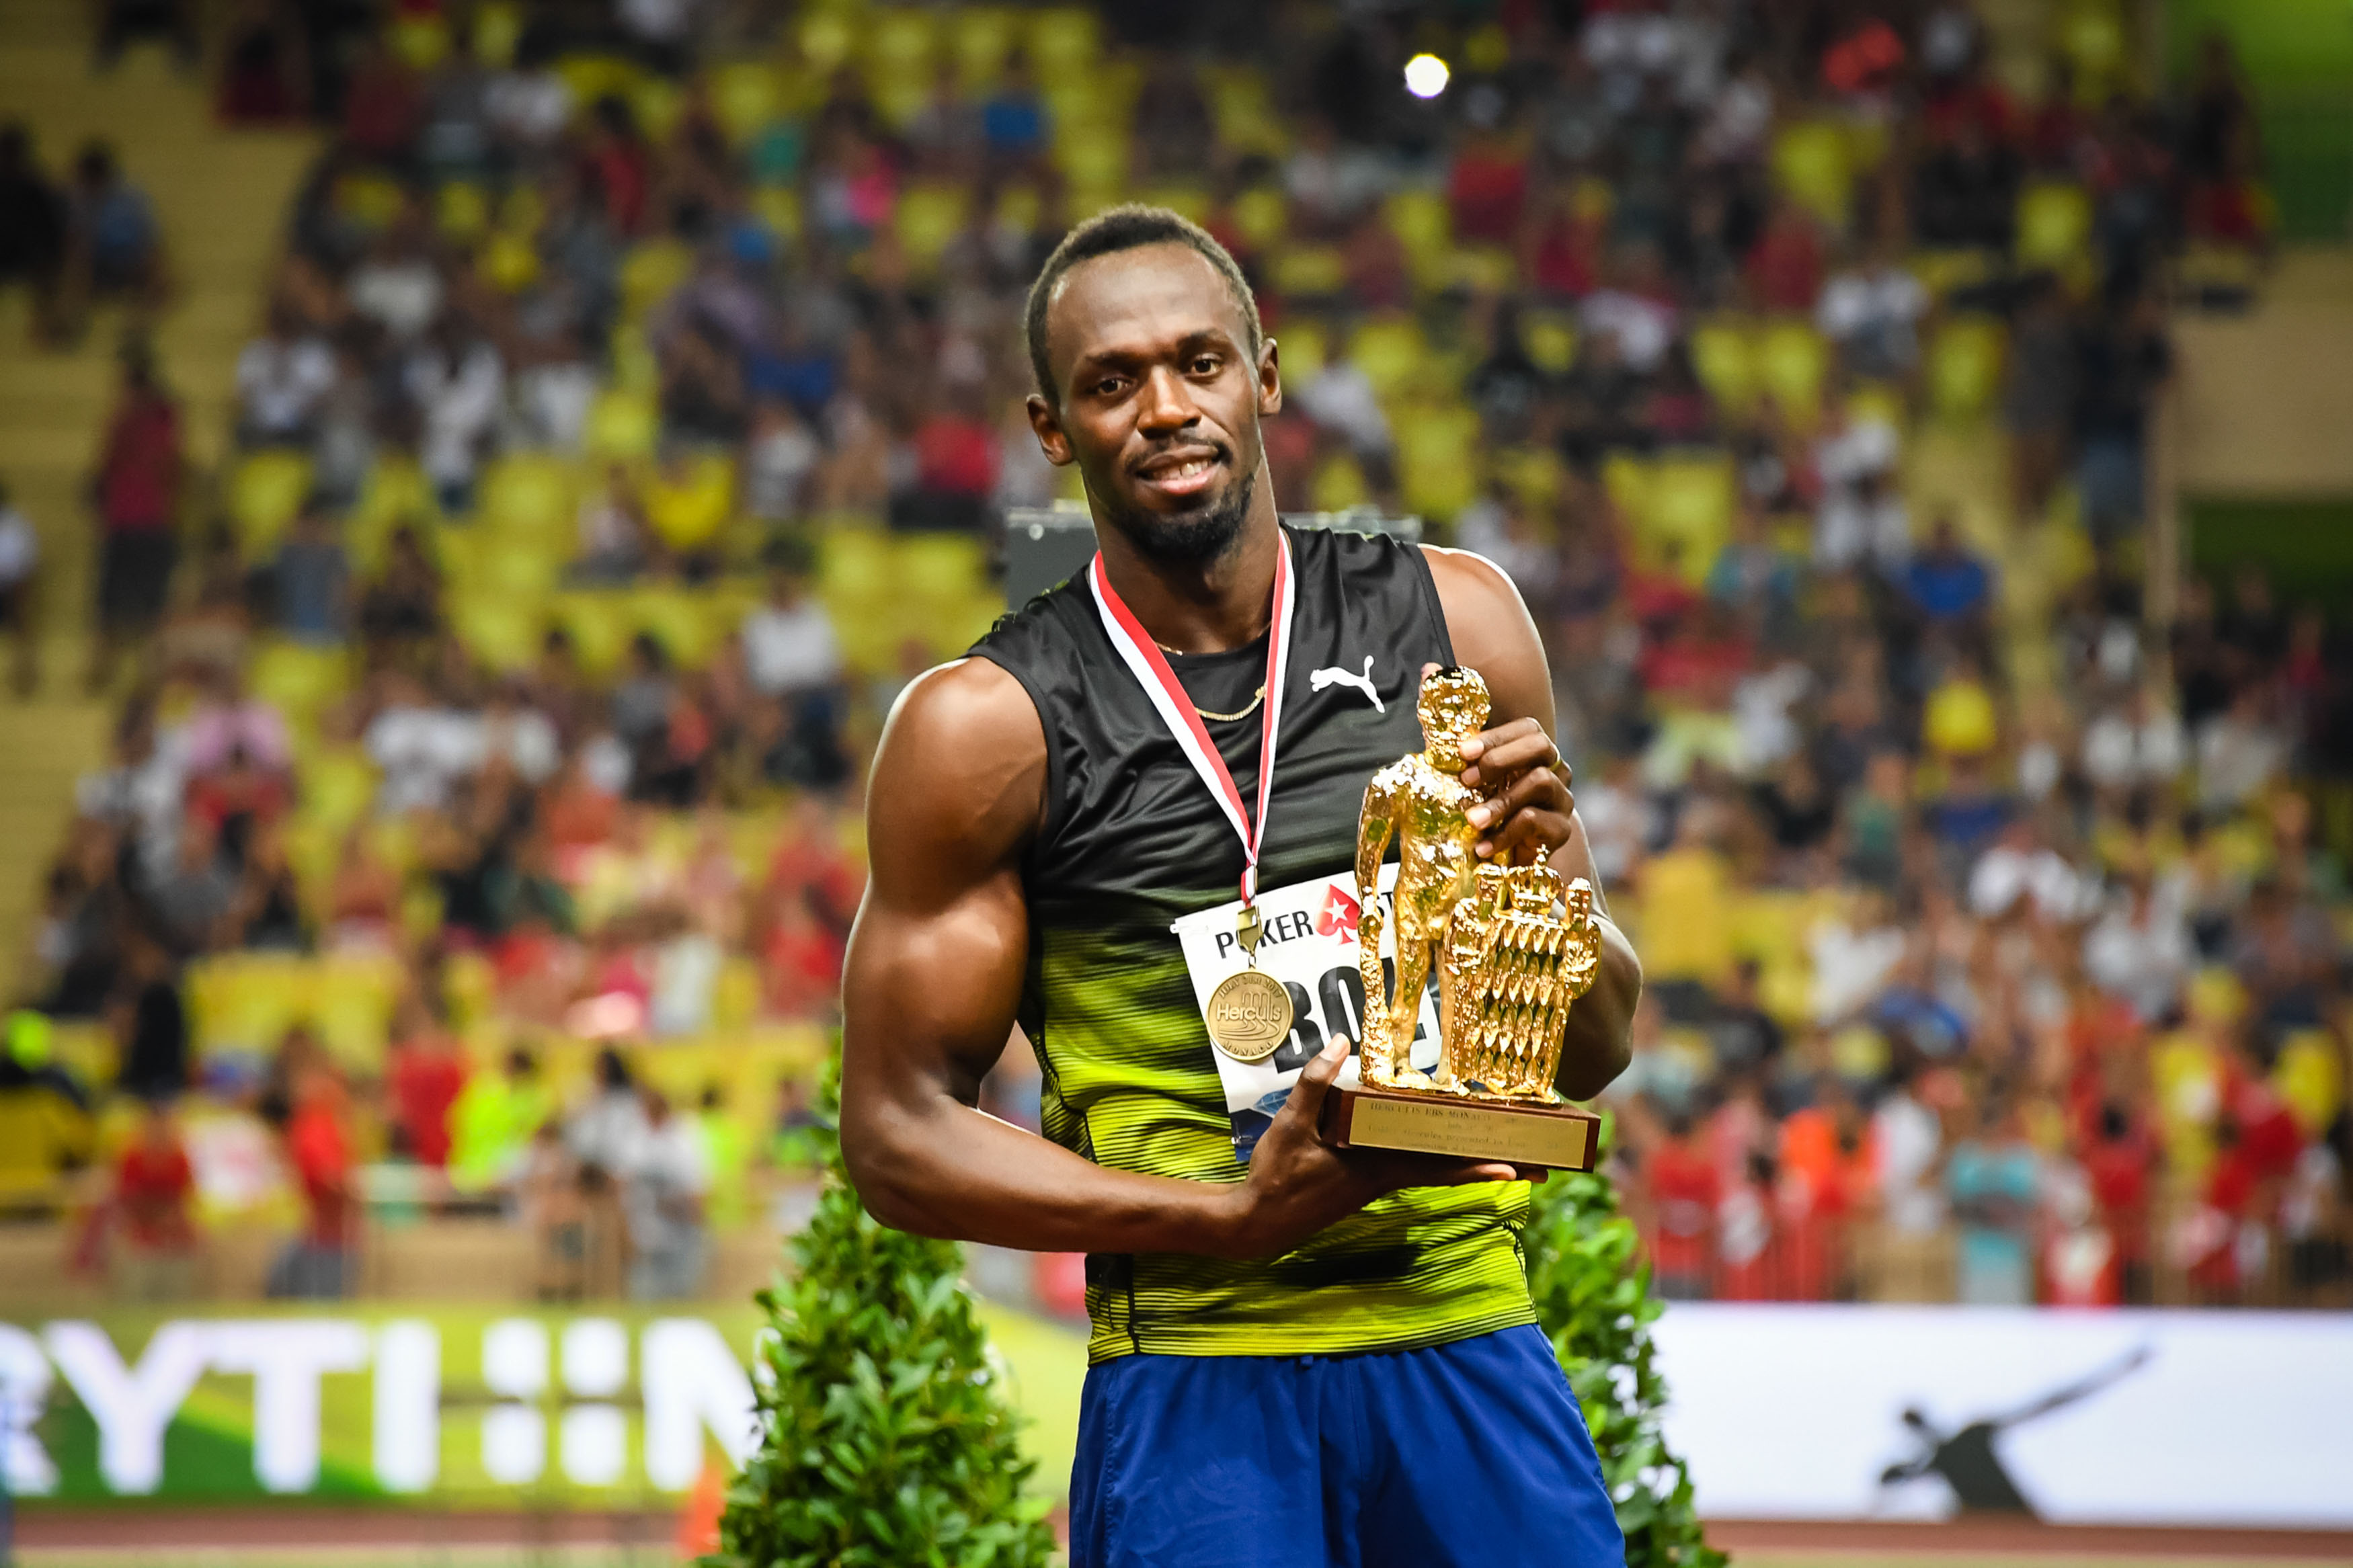 2020-ban több atlétikai versenyen is jelen szeretne lenni Usain Bolt - Blikk